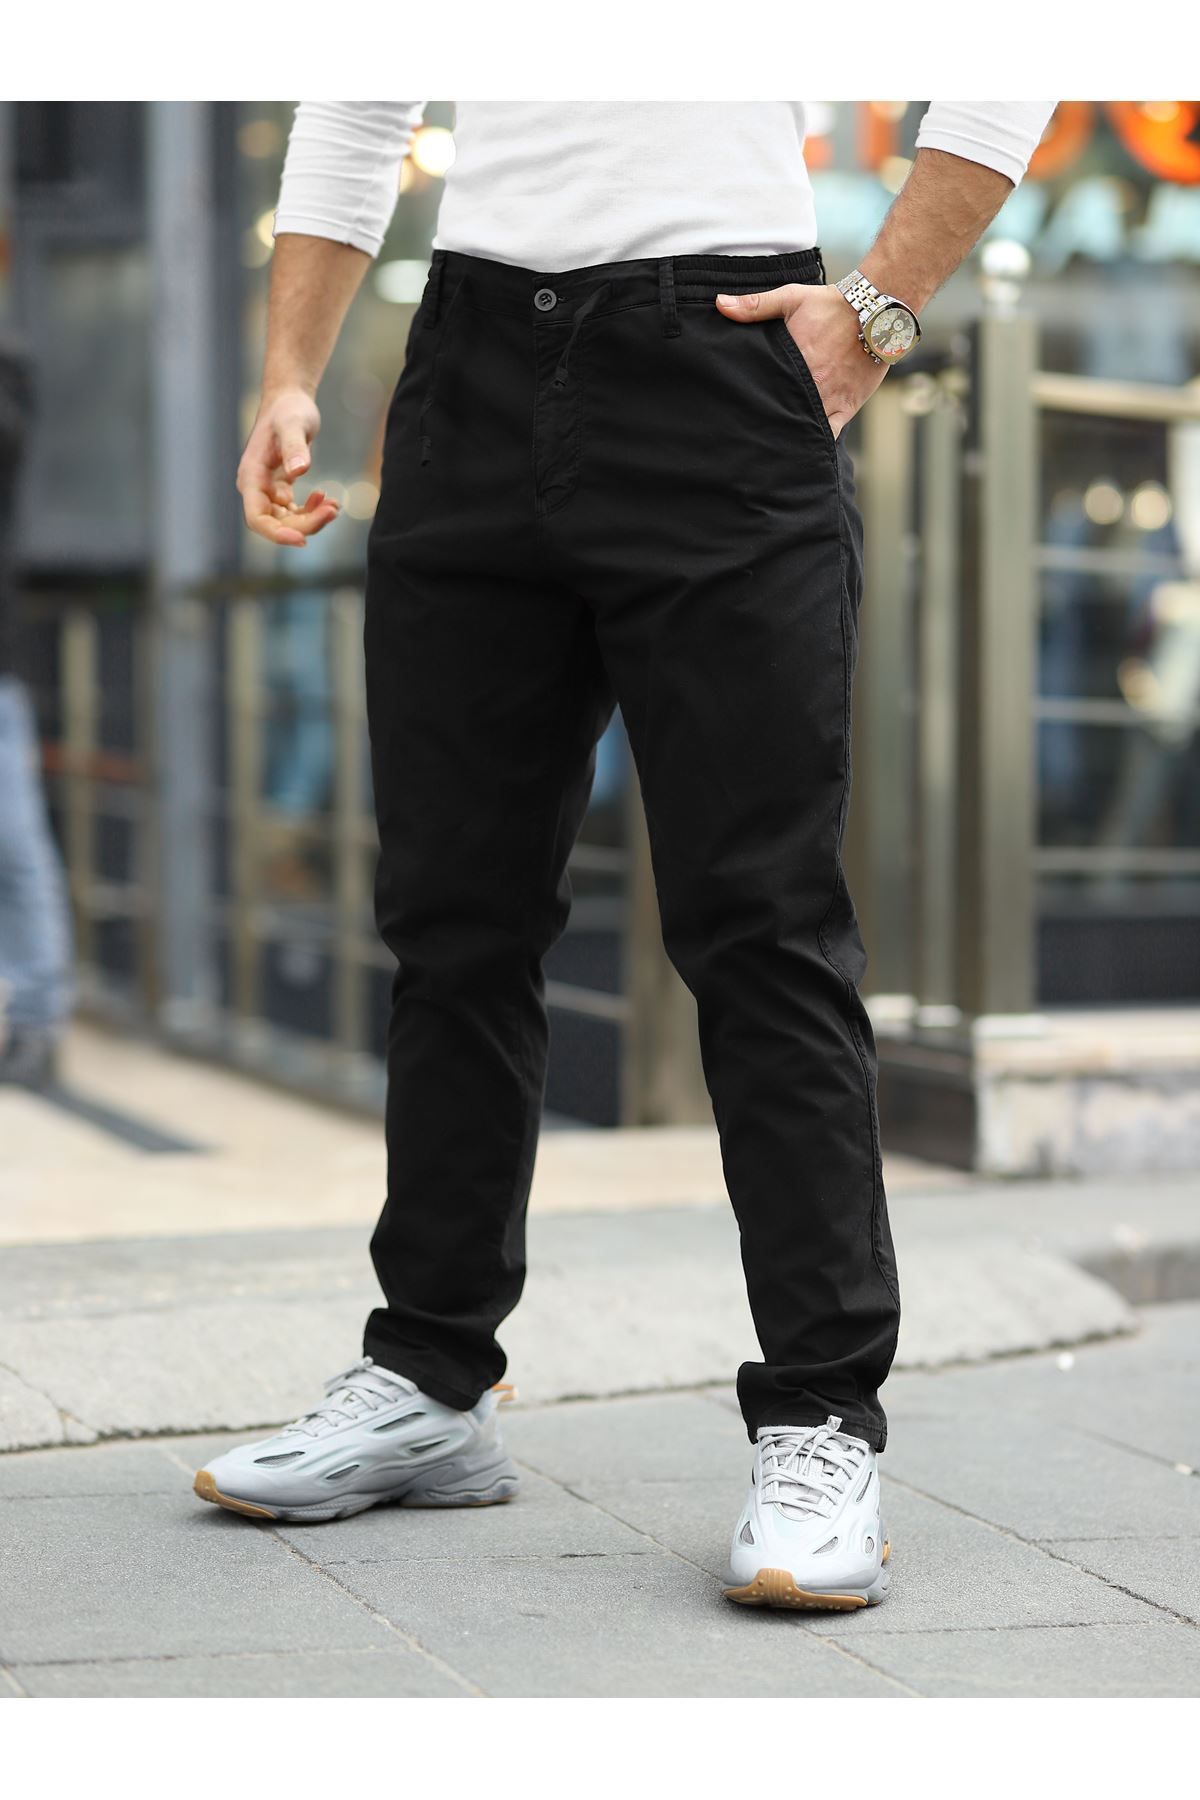 LTC Jeans Erkek Siyah Beli Lastikli Rahat Jogger Pantolon